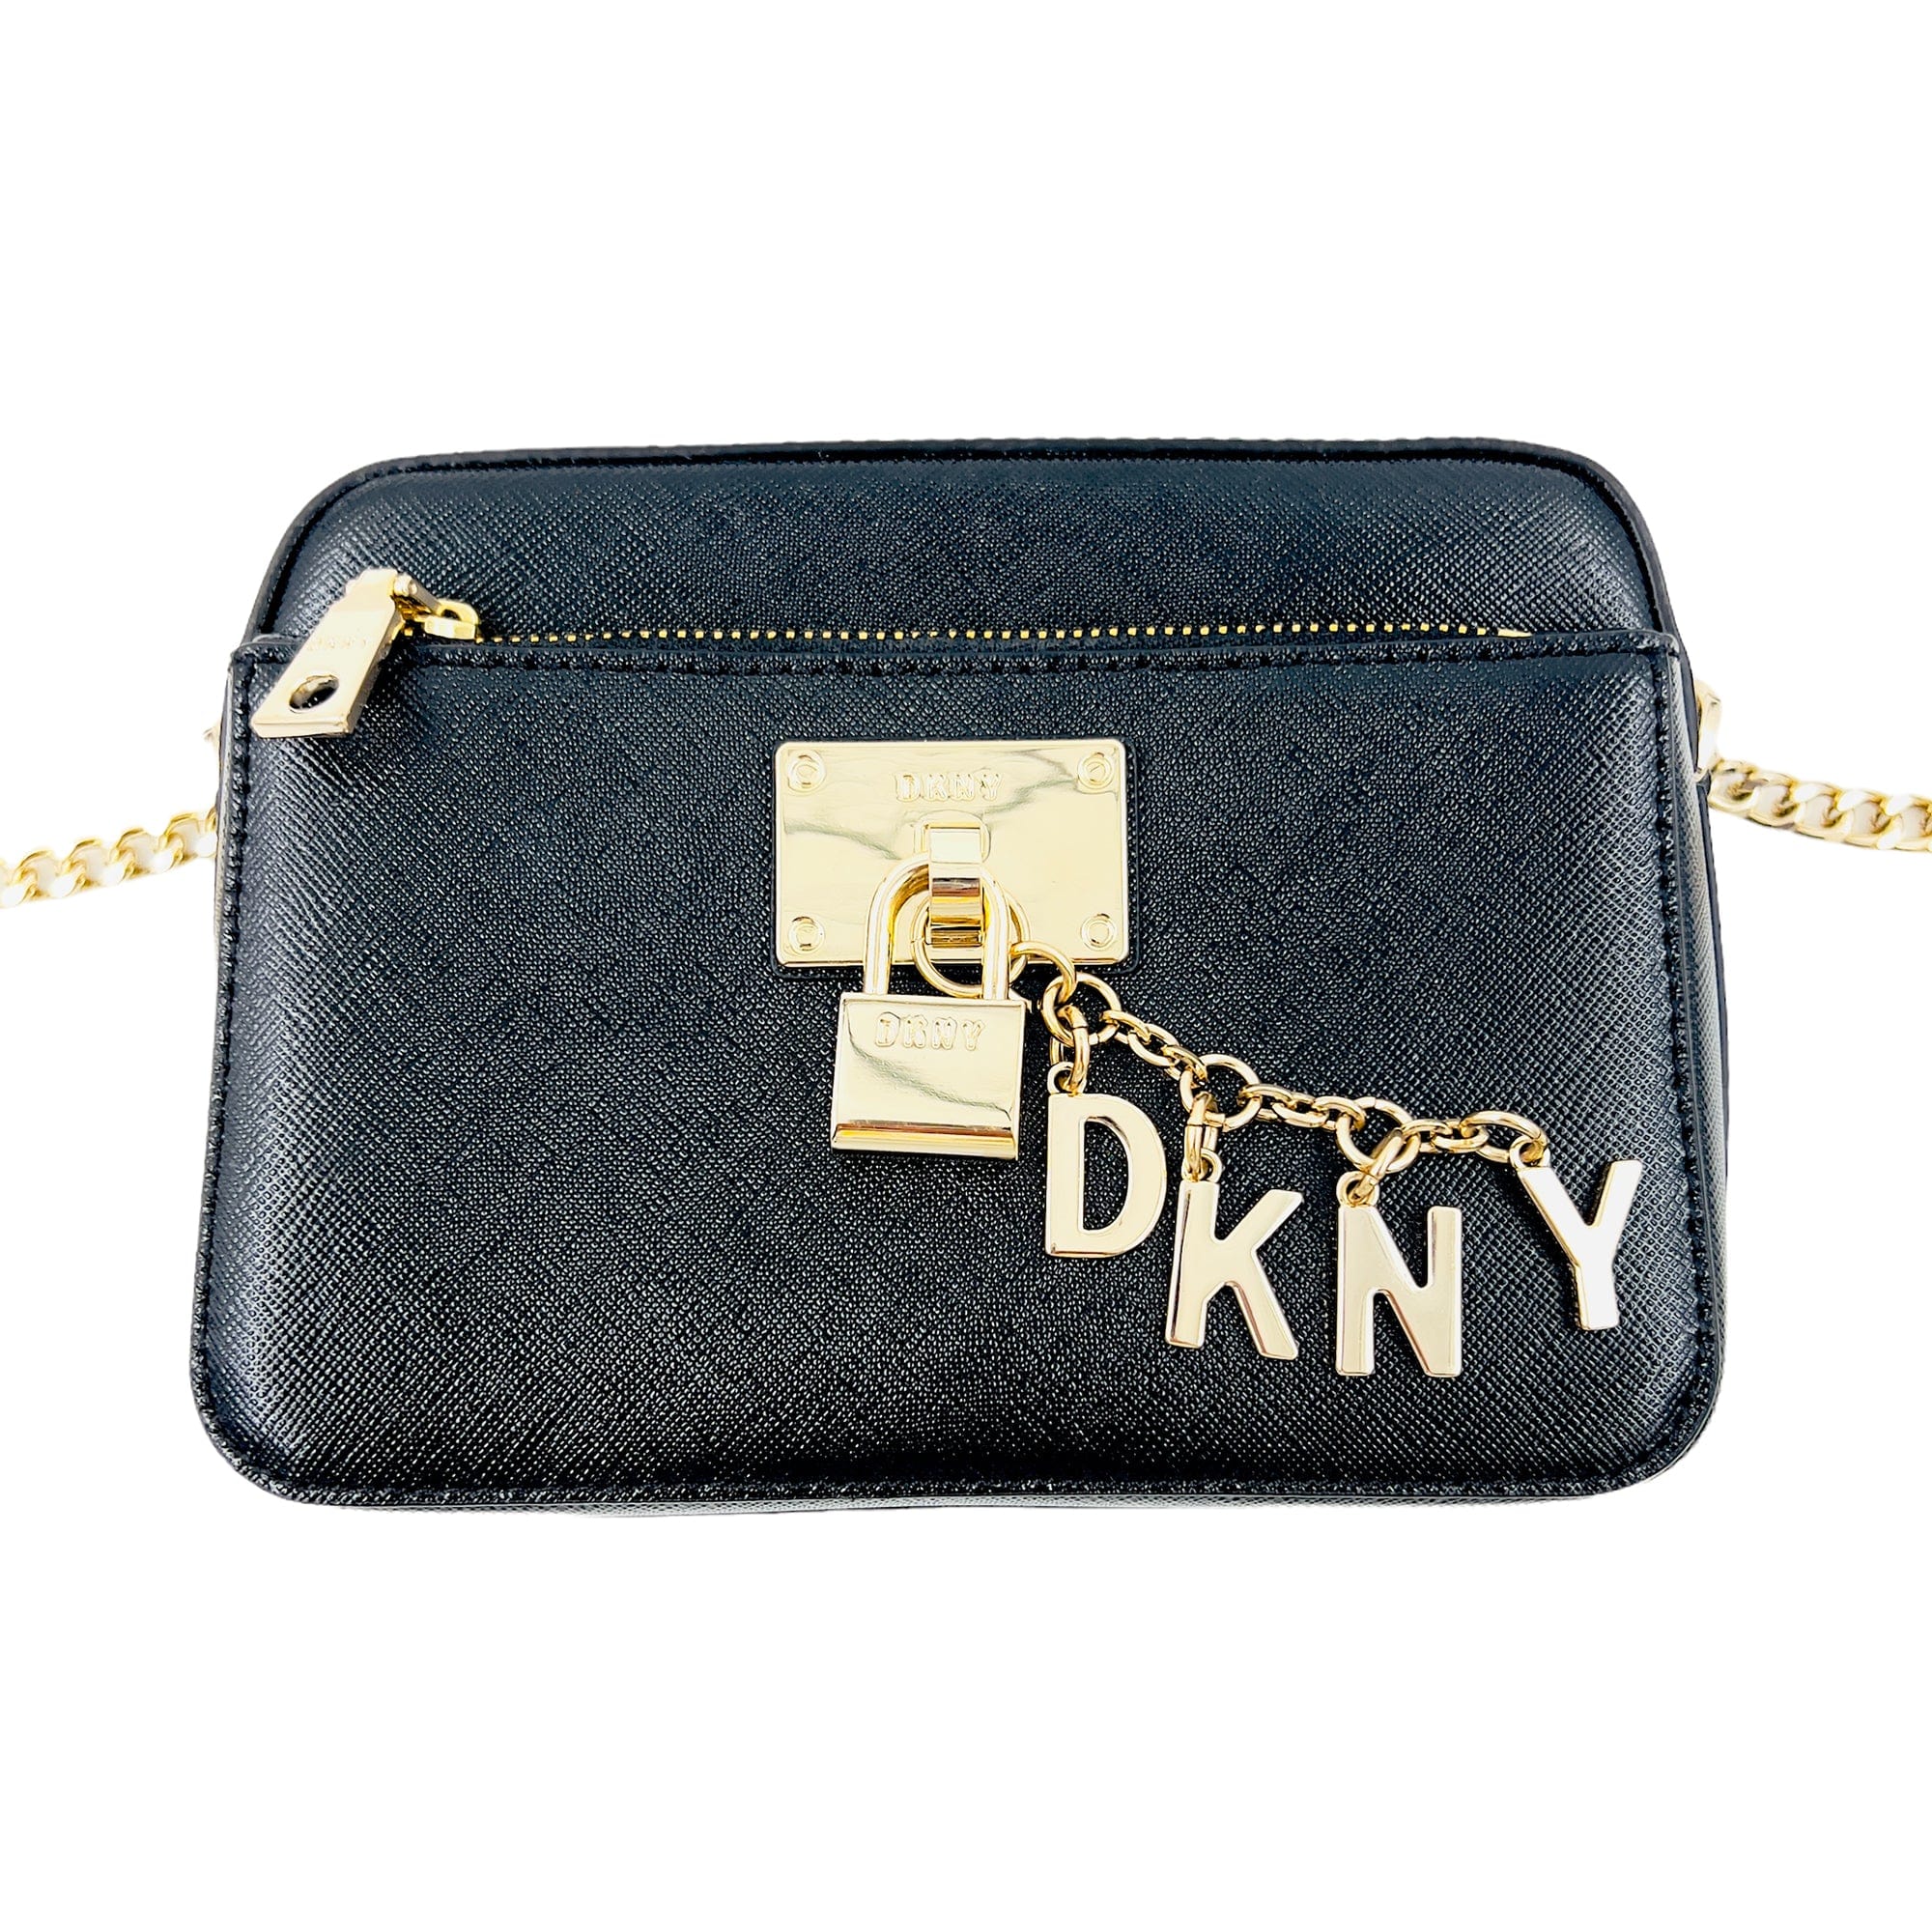 DKNY Leather Camera Crossbody - Black